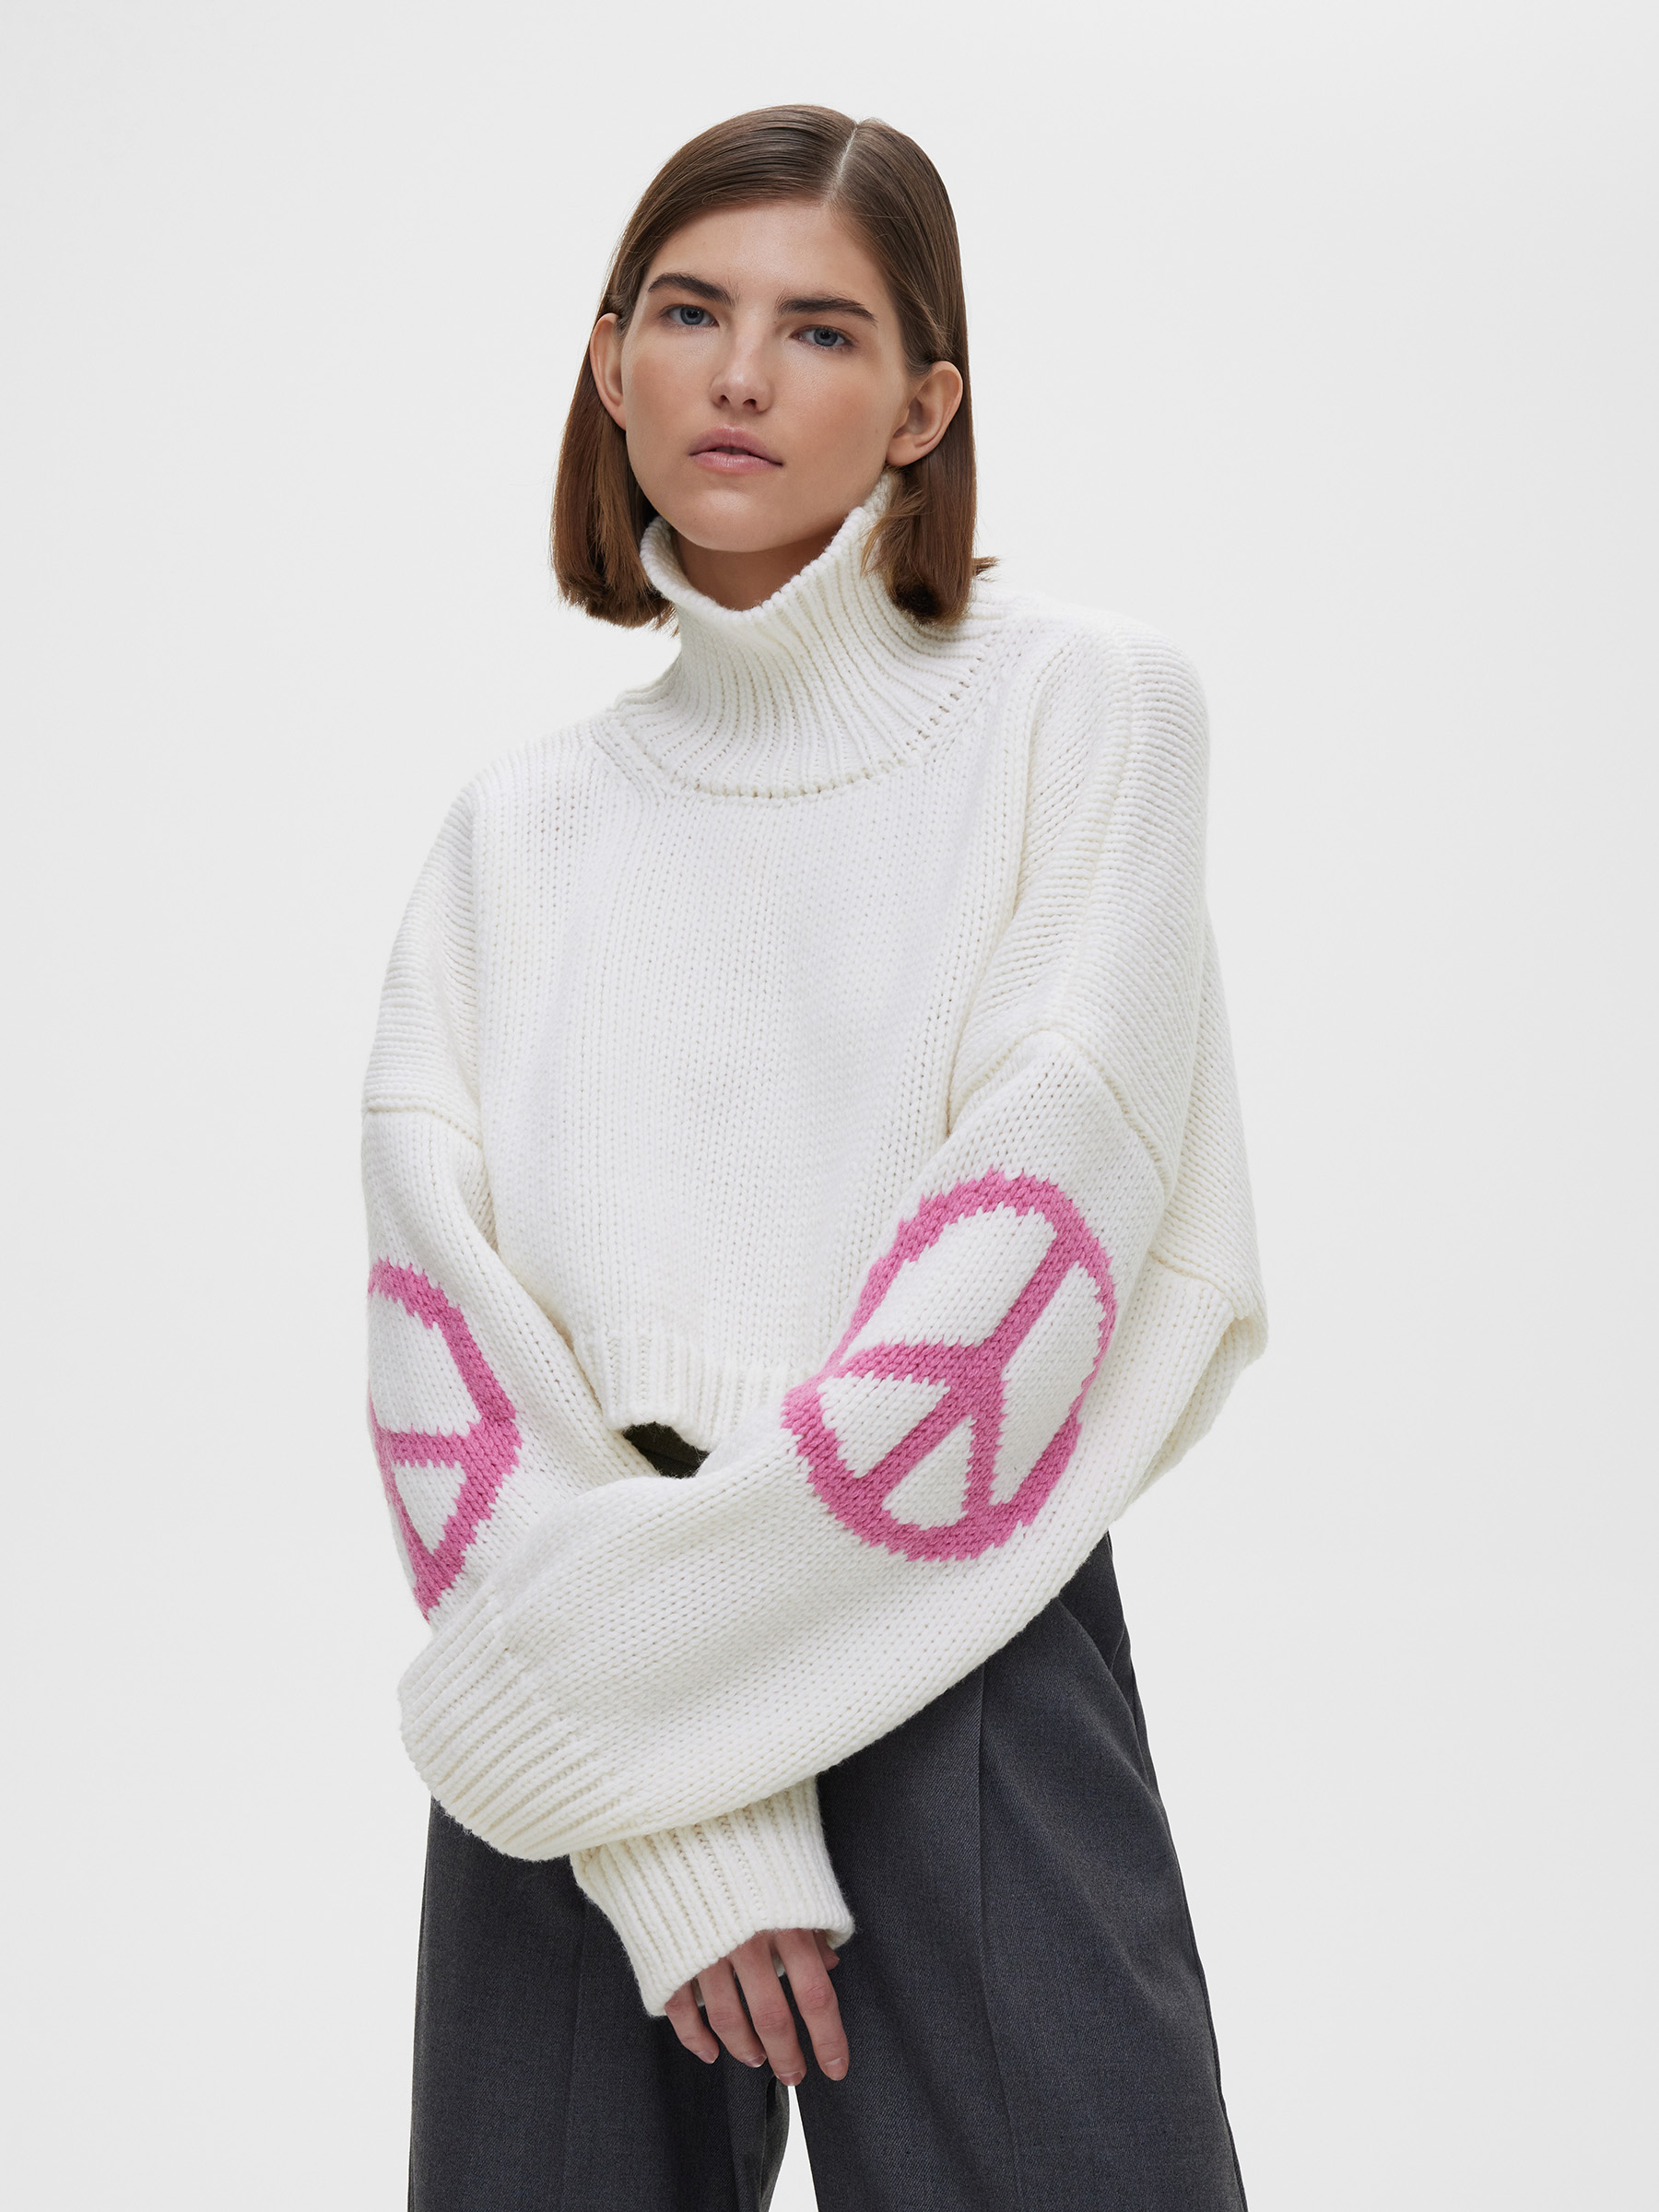 

Кроп-свитер Aim clo из натуральных материалов, Бело-розовый